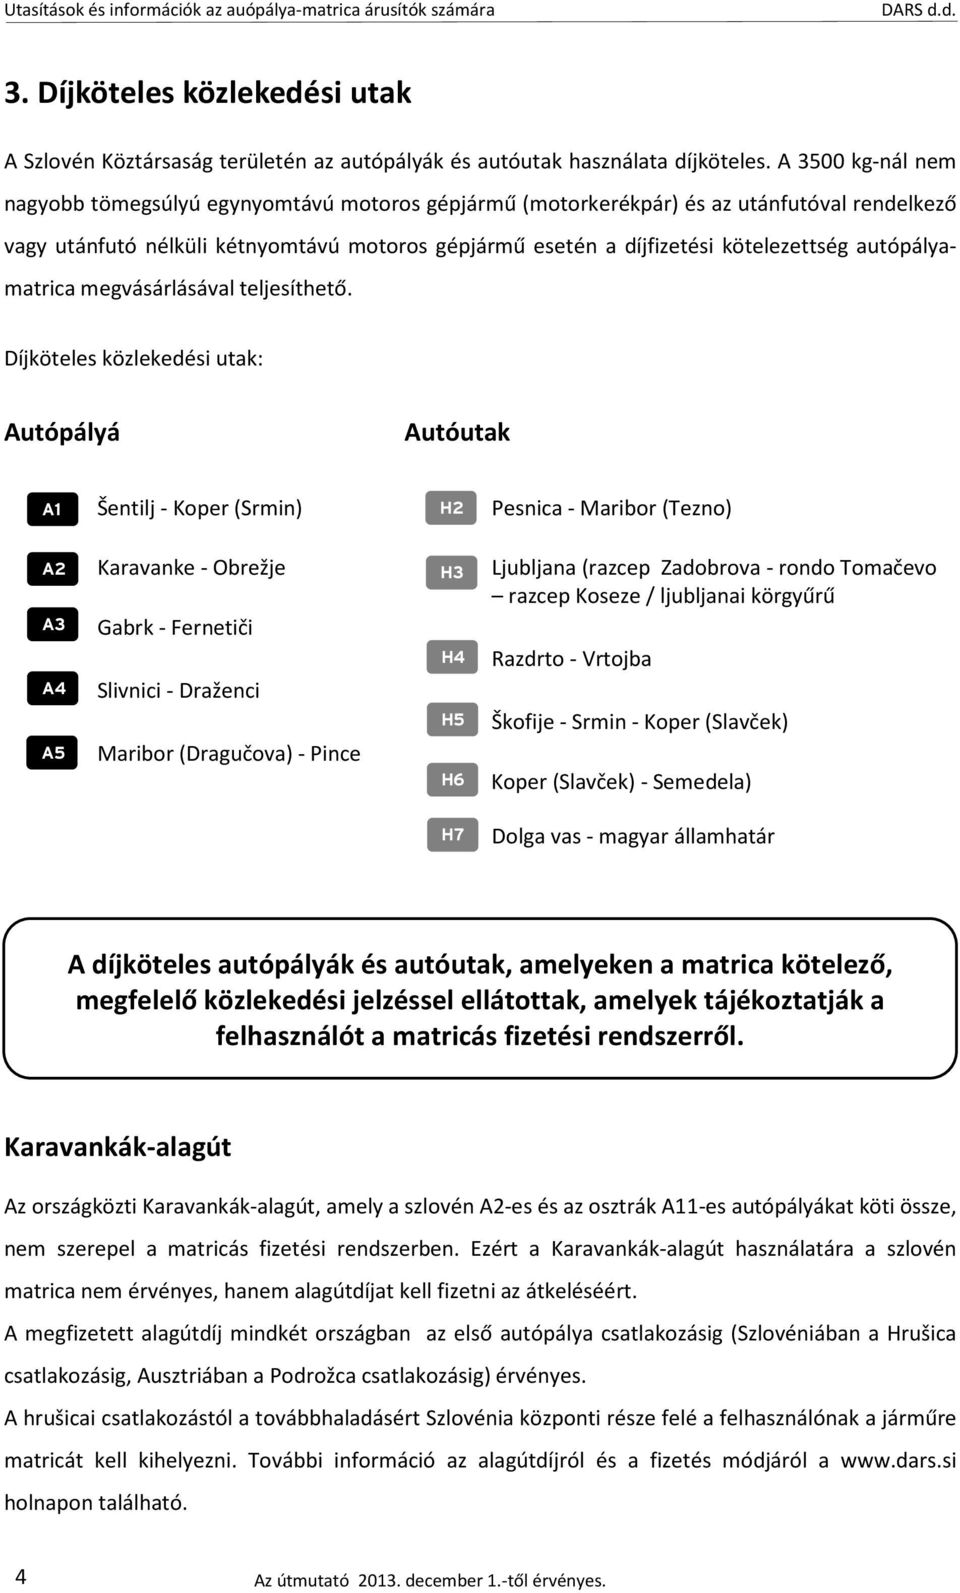 UTASÍTÁSOK ÉS INFORMÁCIÓK - PDF Free Download